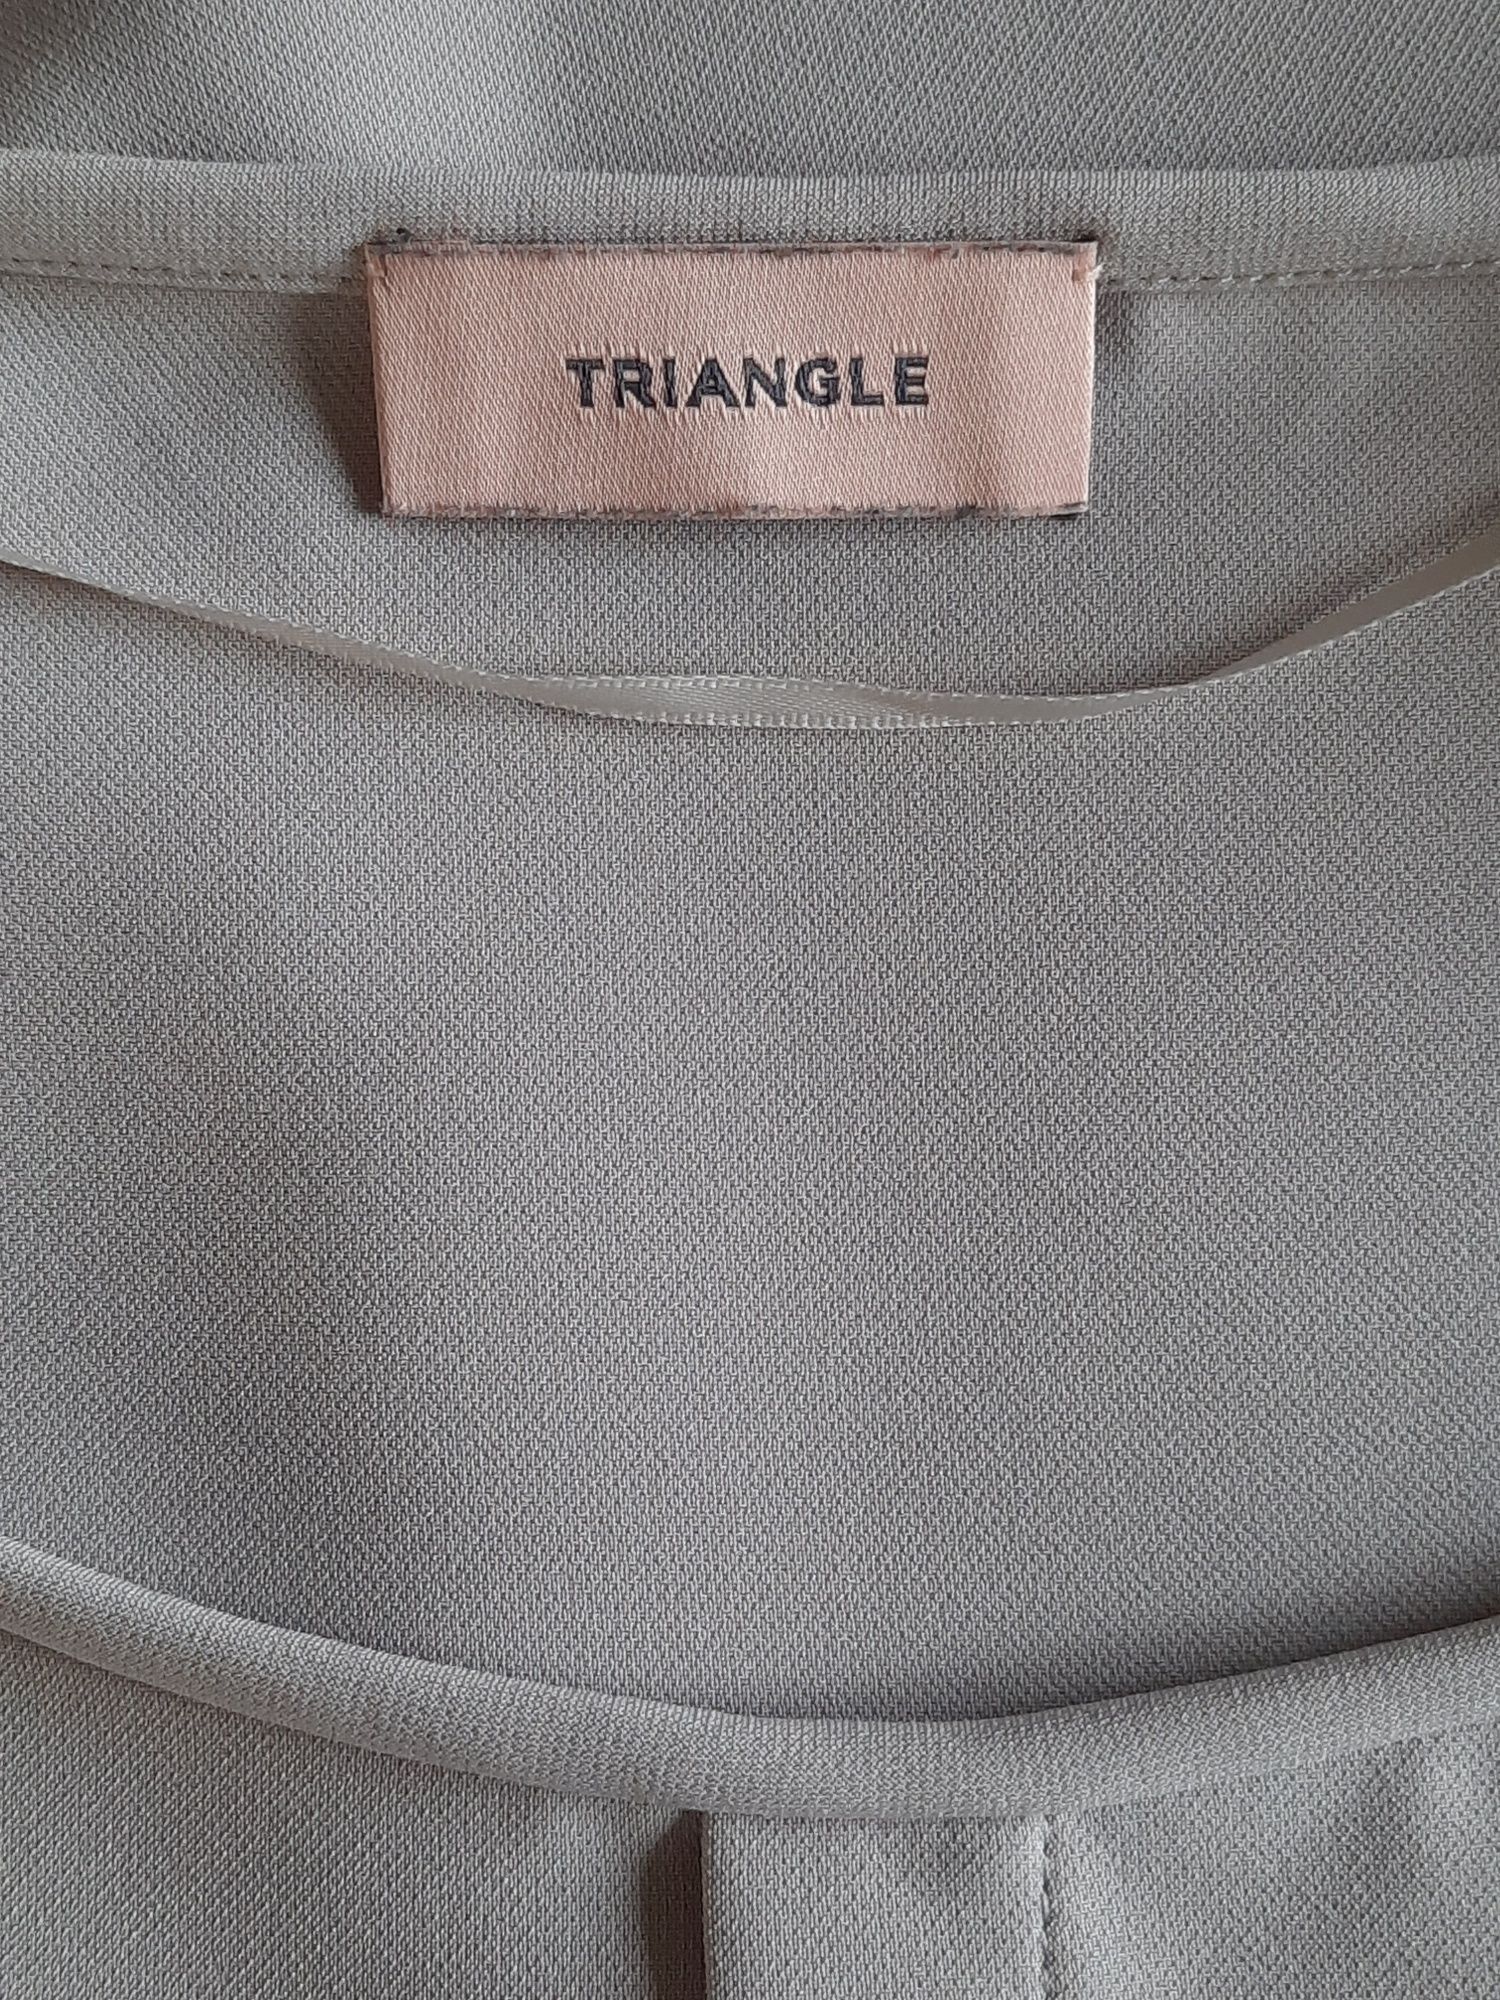 Elegancka bluzka Triangle roz. 50,  XXL